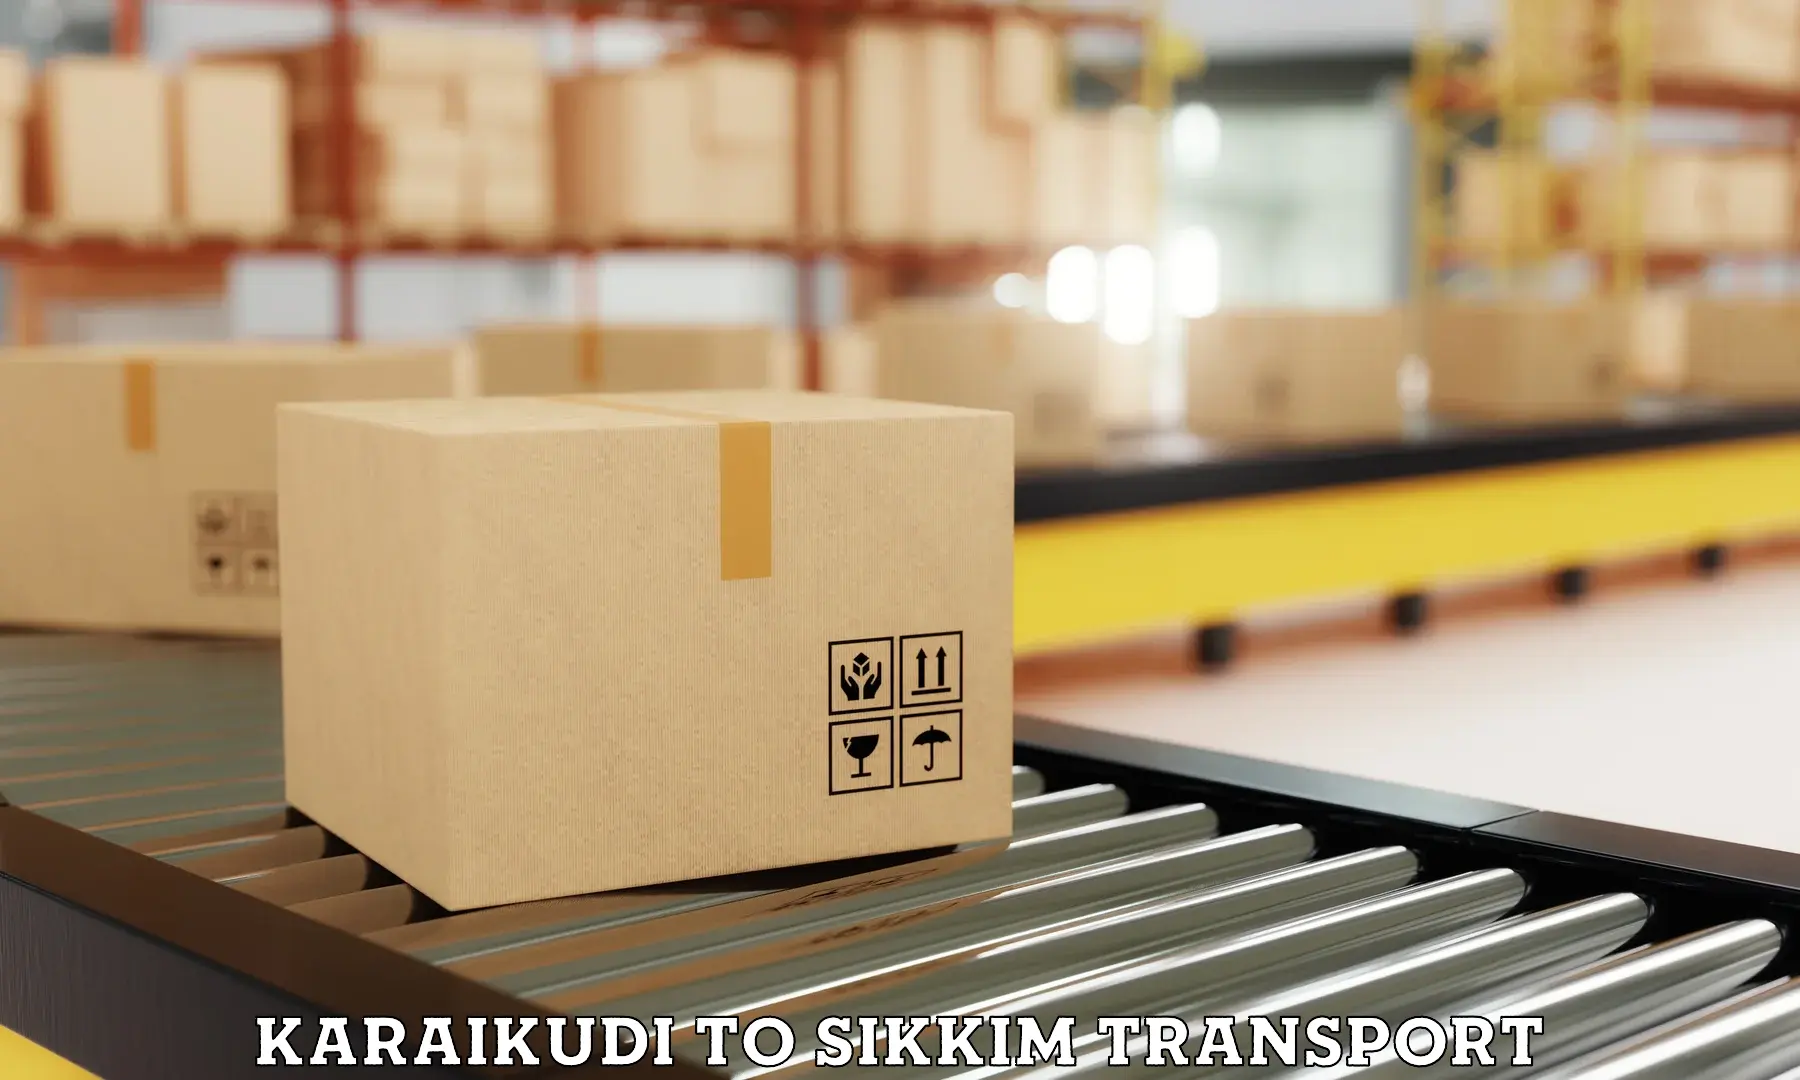 Container transport service Karaikudi to Namchi